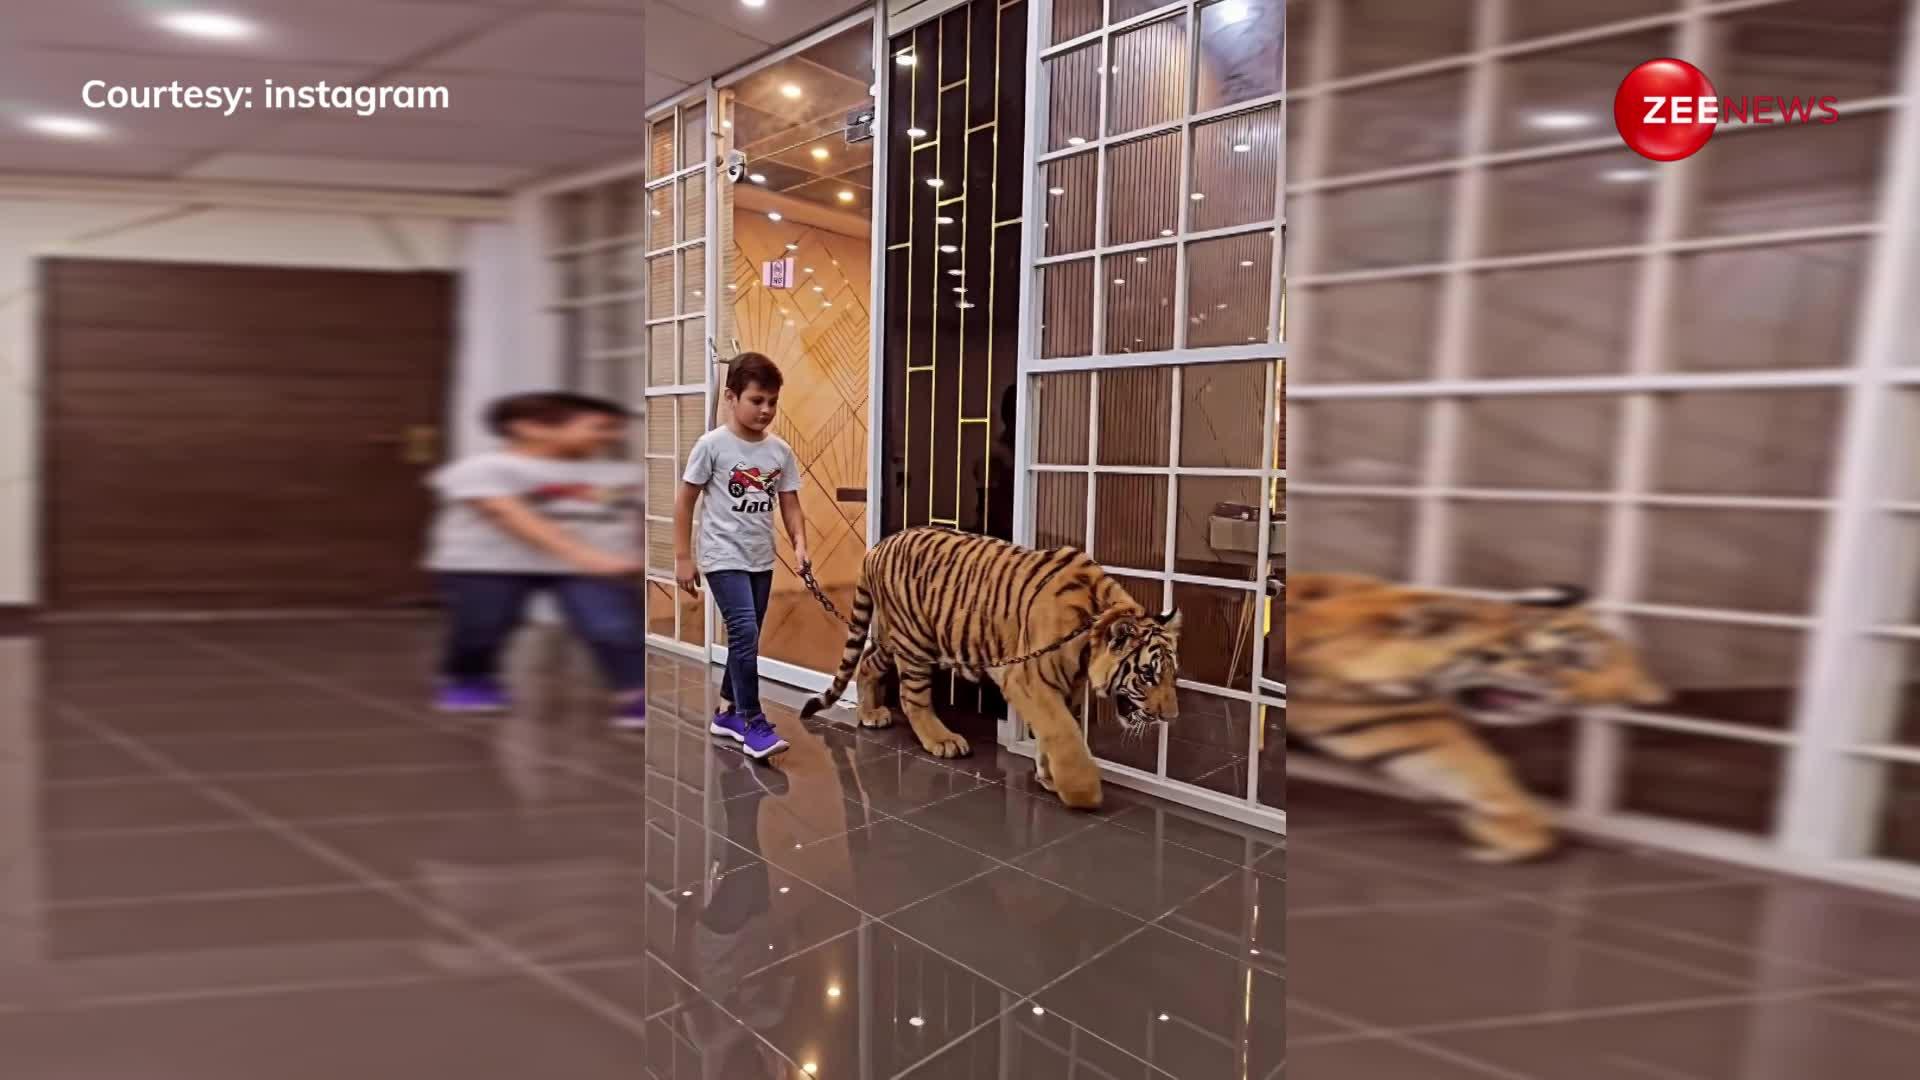 जंगली शेर को चैन से बांध अपने साथ घुमाता हुआ नजर आया 11 साल का शरारती बच्चा, वीडियो देख चकित रह गए लोग